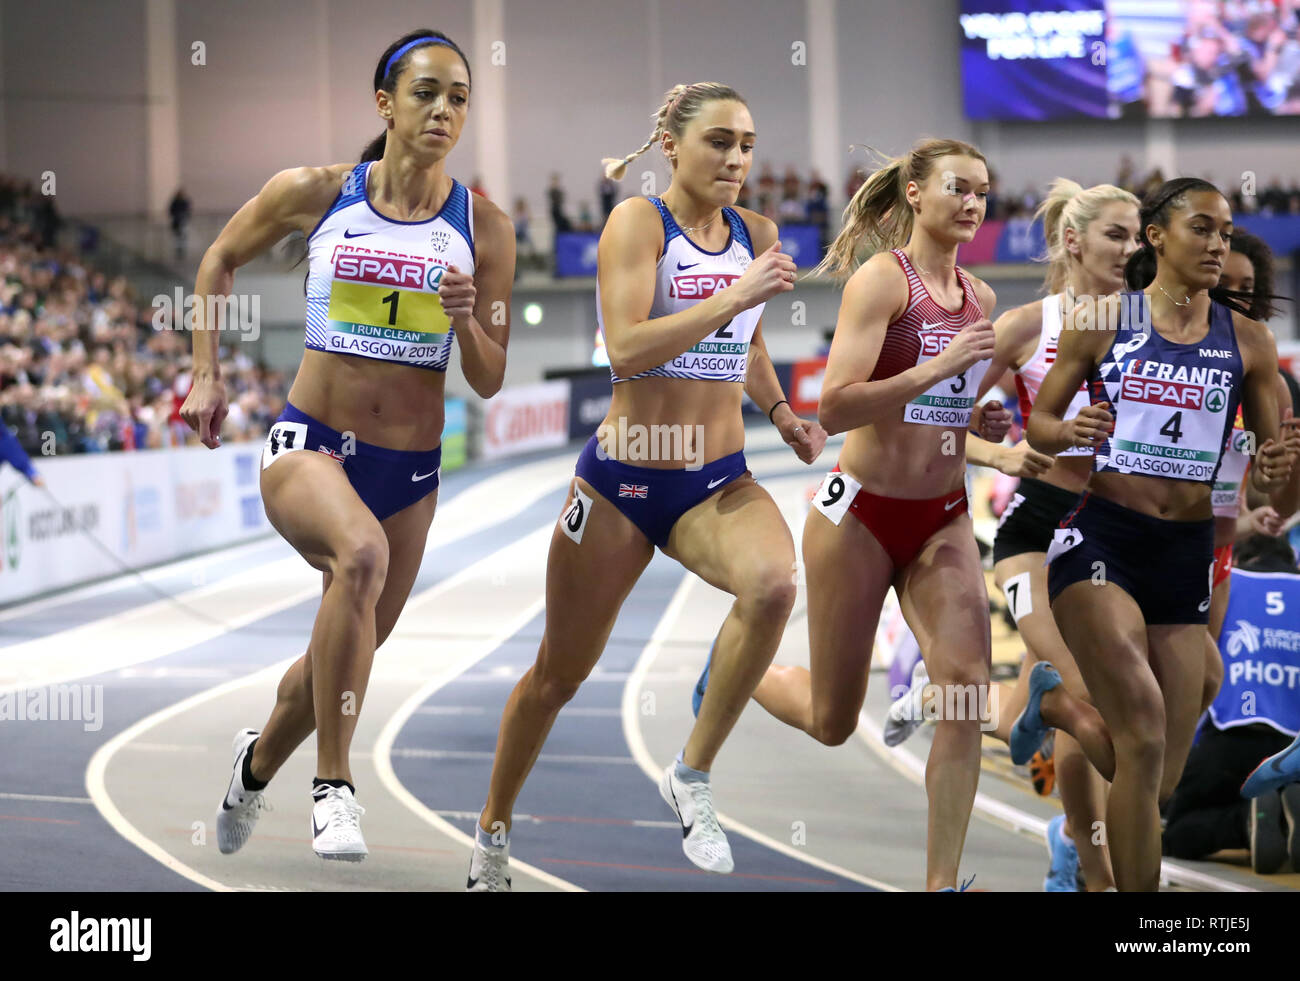 La Grande Bretagne Johnson-Thompson Katarina (à gauche) au pentathlon Femmes 800m au cours de la première journée de l'Indoor d'athlétisme à l'Emirates Arena, Glasgow. Banque D'Images